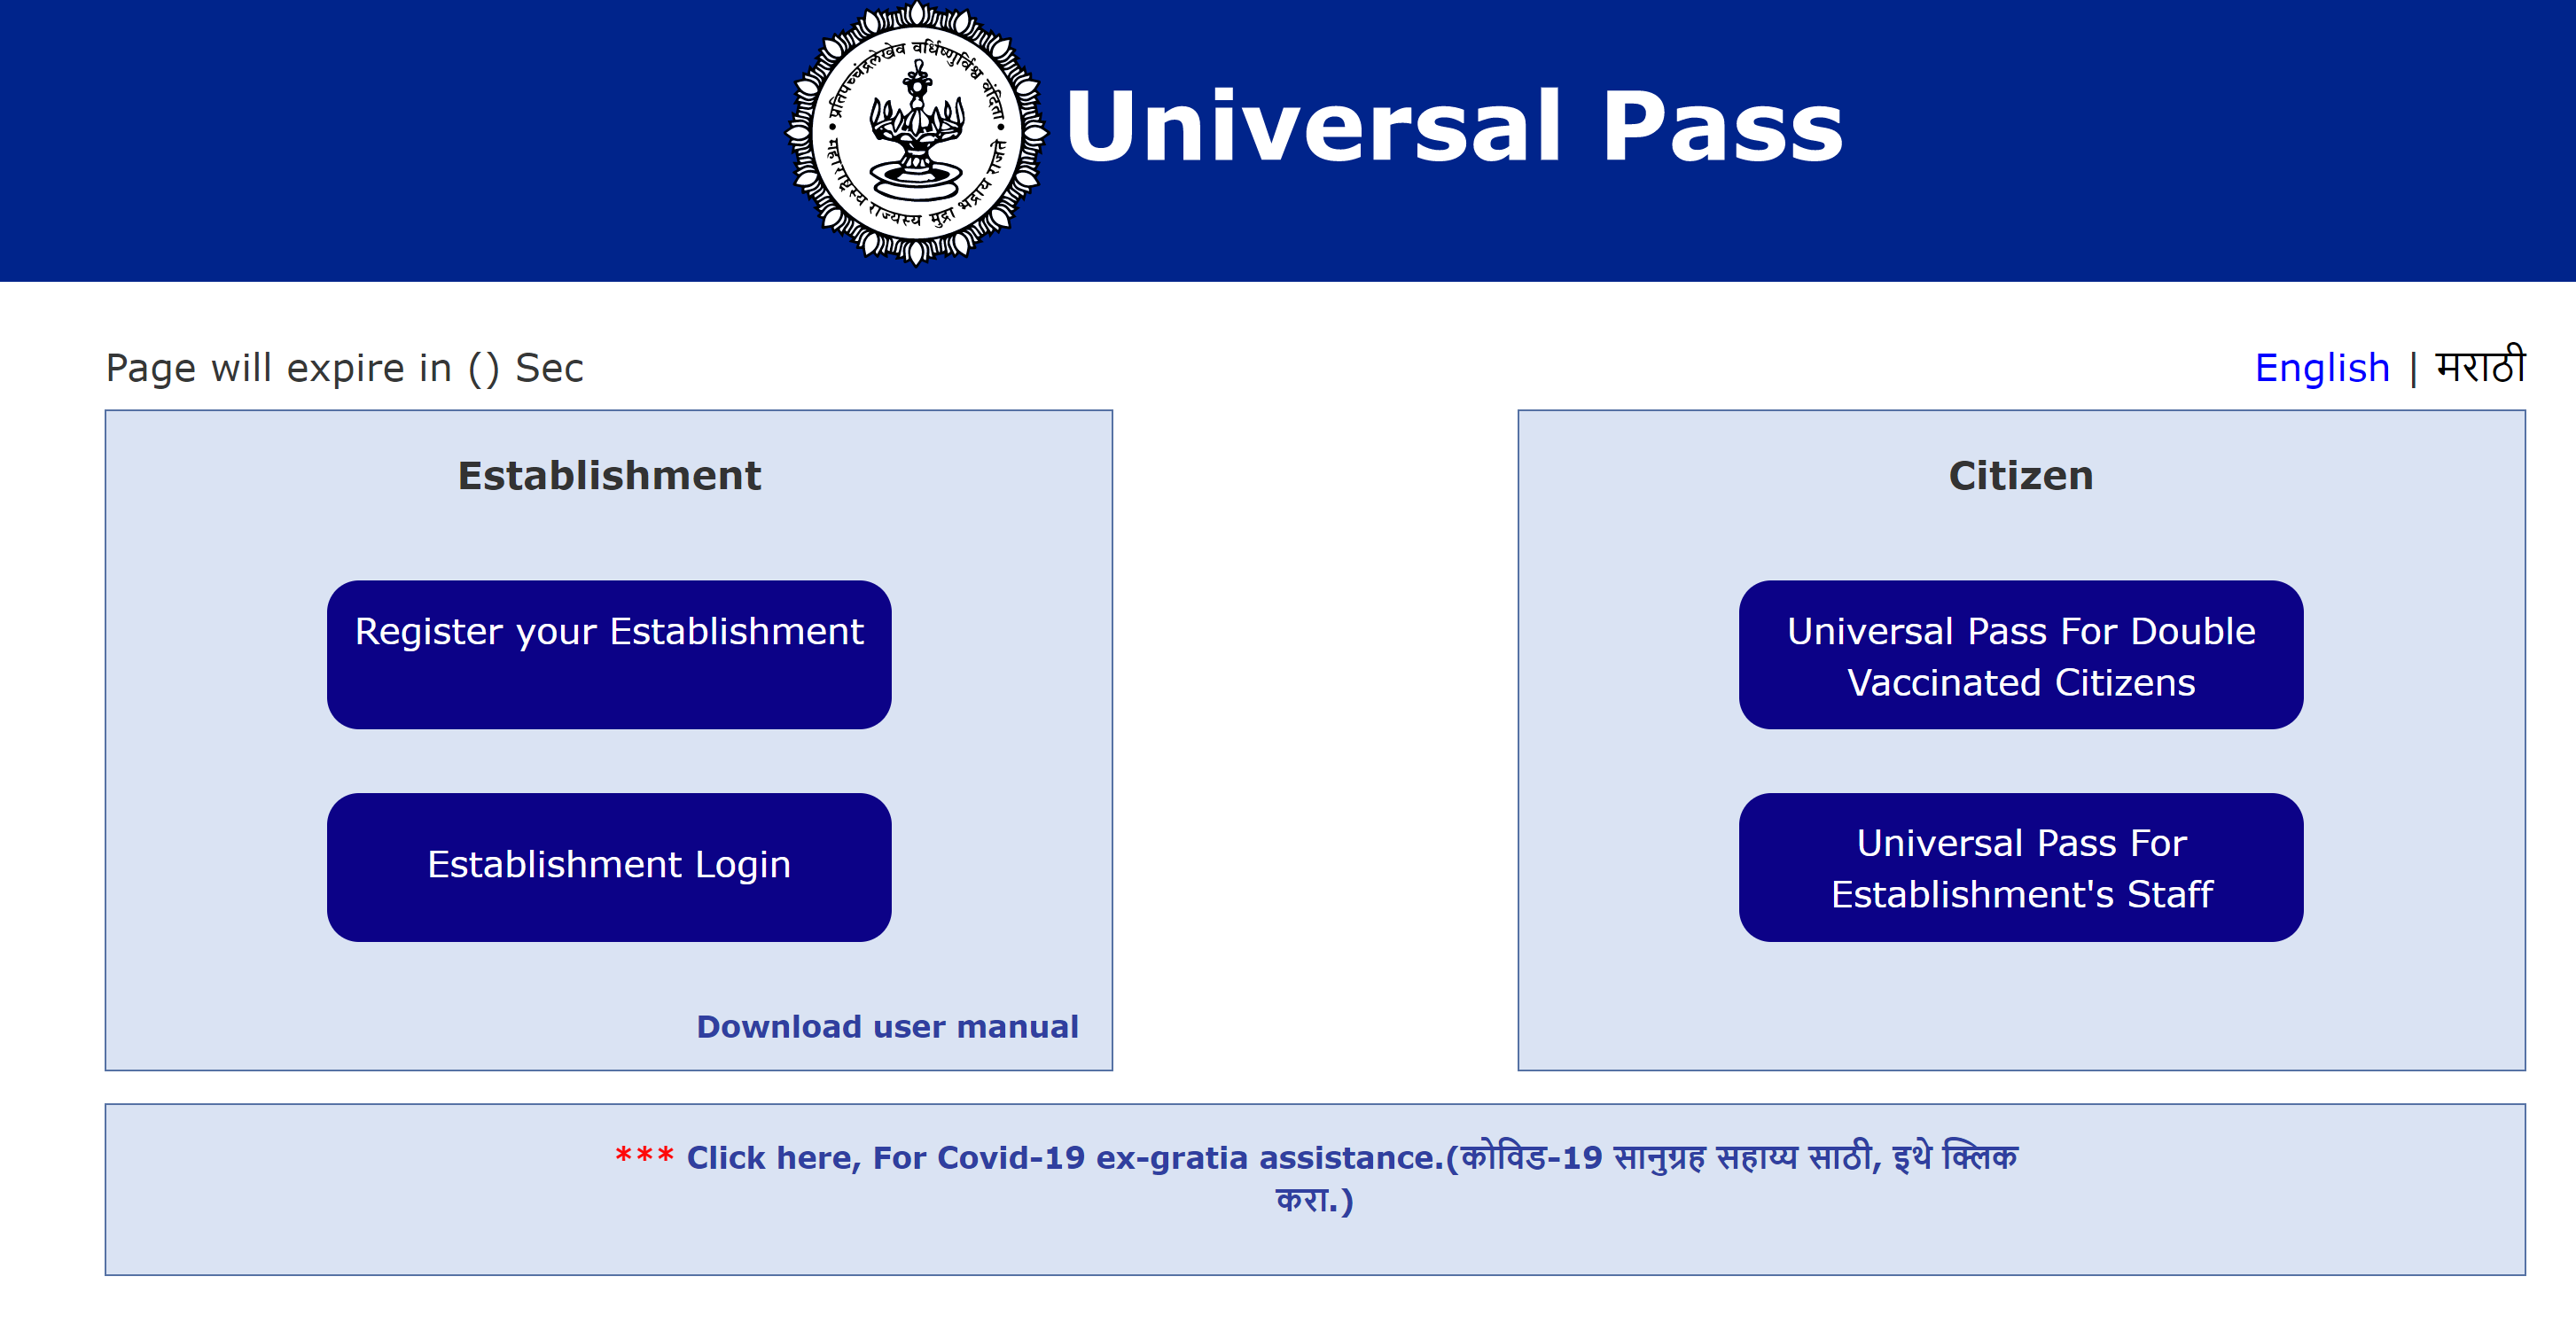 Open https://epassmsdma.mahait.org/login.htm to Register Universal Pass.